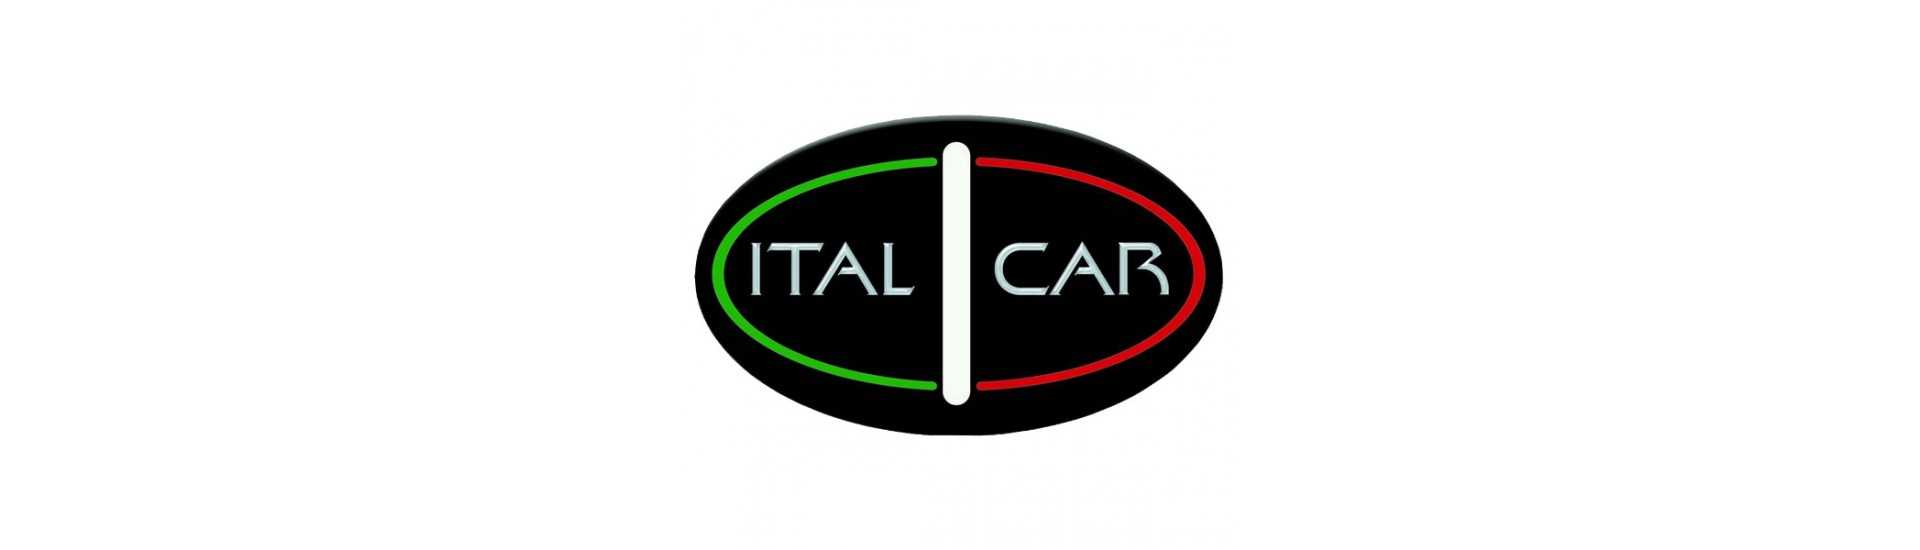 Parhaan auton hinta ilman lupaa Italcar